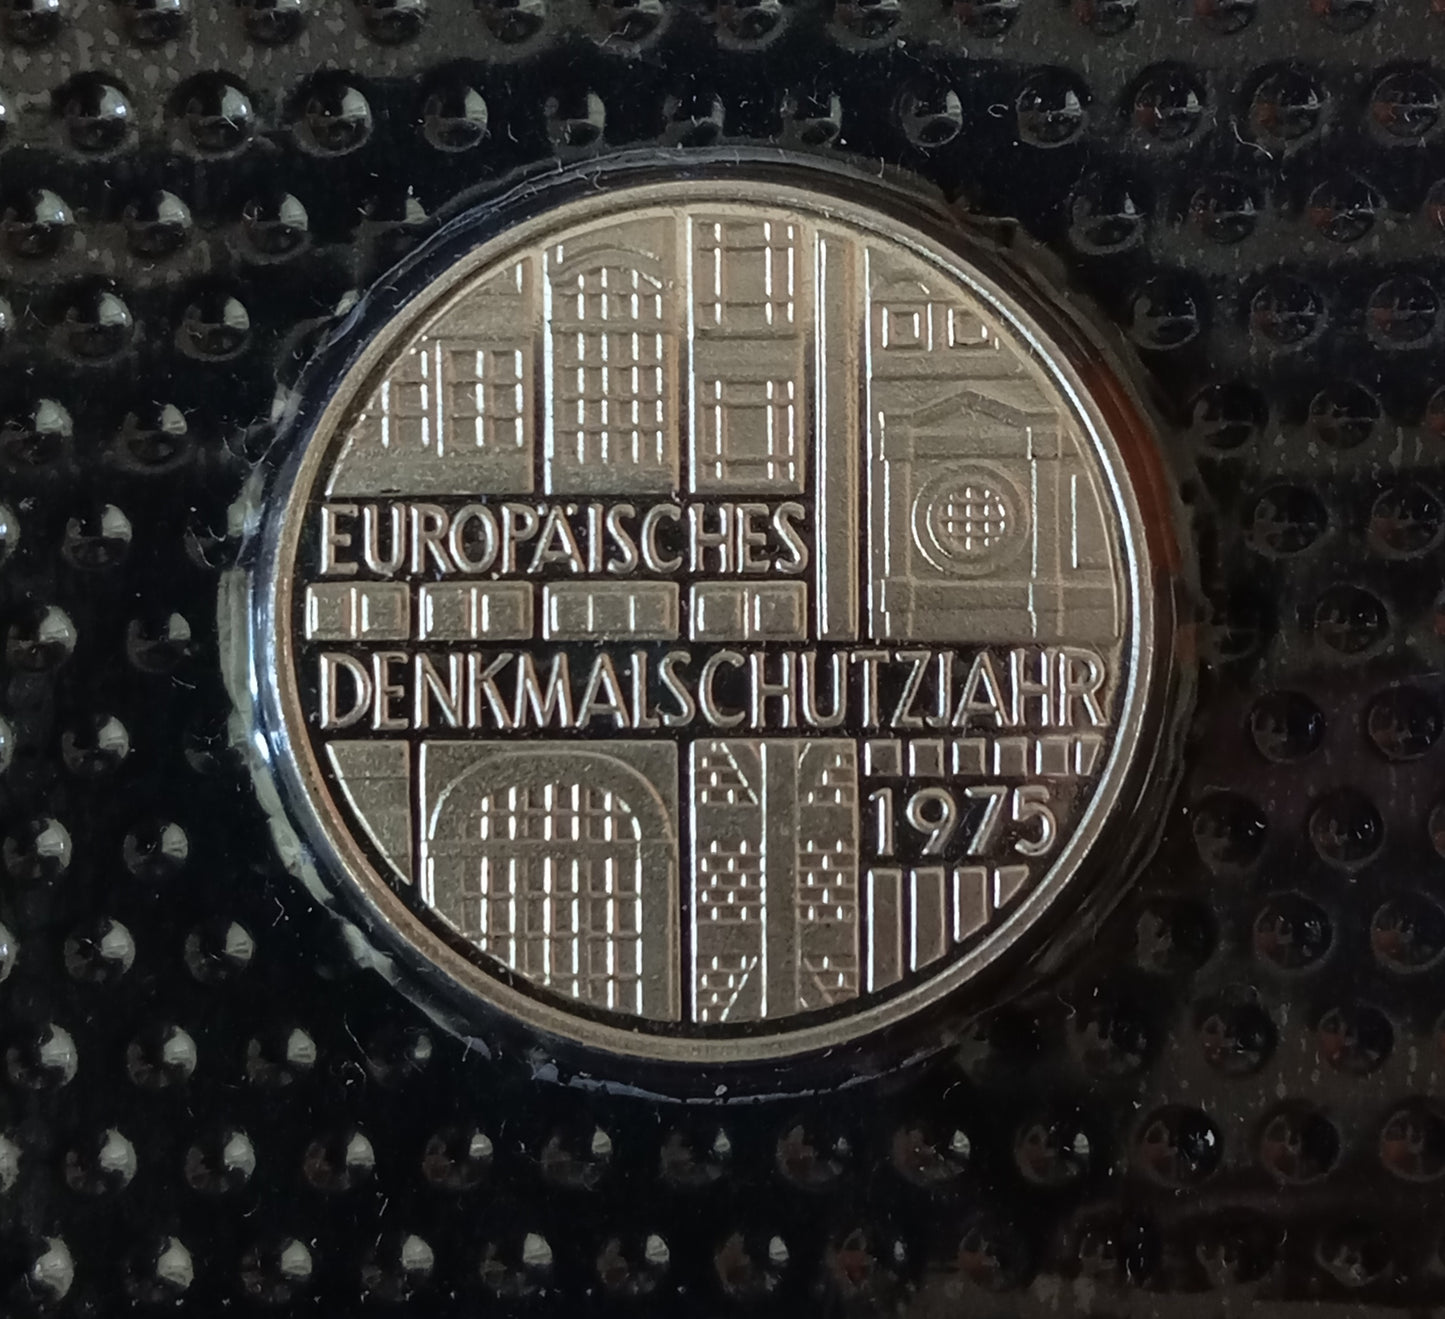 EUROPÄISCHES DENKMALSCHUTZJAHR 1975, 5 DM Silbermünze Spiegelglanz, 1975